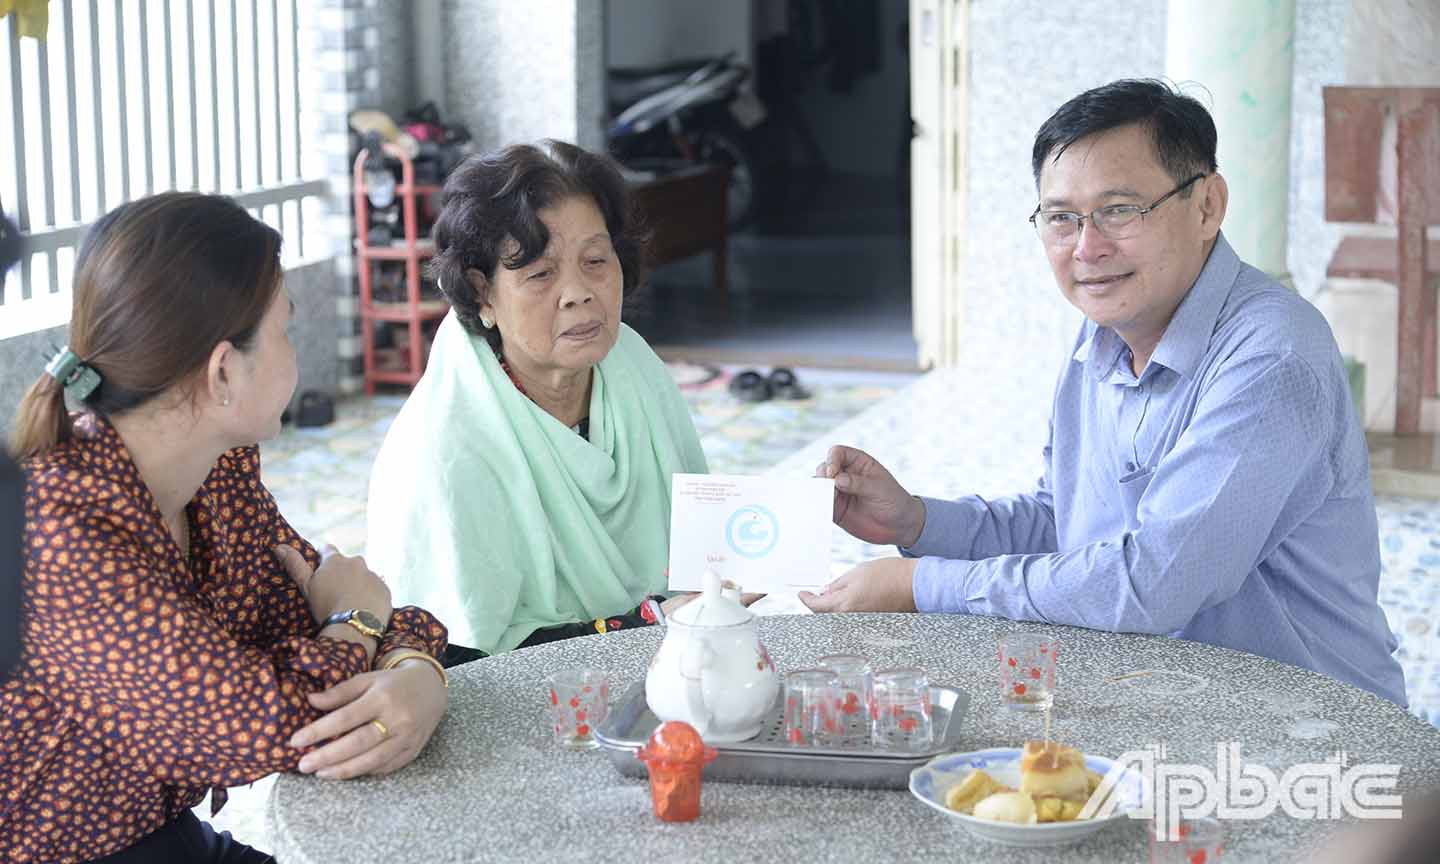 Đồng chí Đỗ Tấn Hùng và các thành viên trong đoàn đến thăm và tặng quà gia đình bà Nguyễn Thị Vạn, vợ liệt sĩ, ấp Mỹ Thuận, xã Thạnh Mỹ.